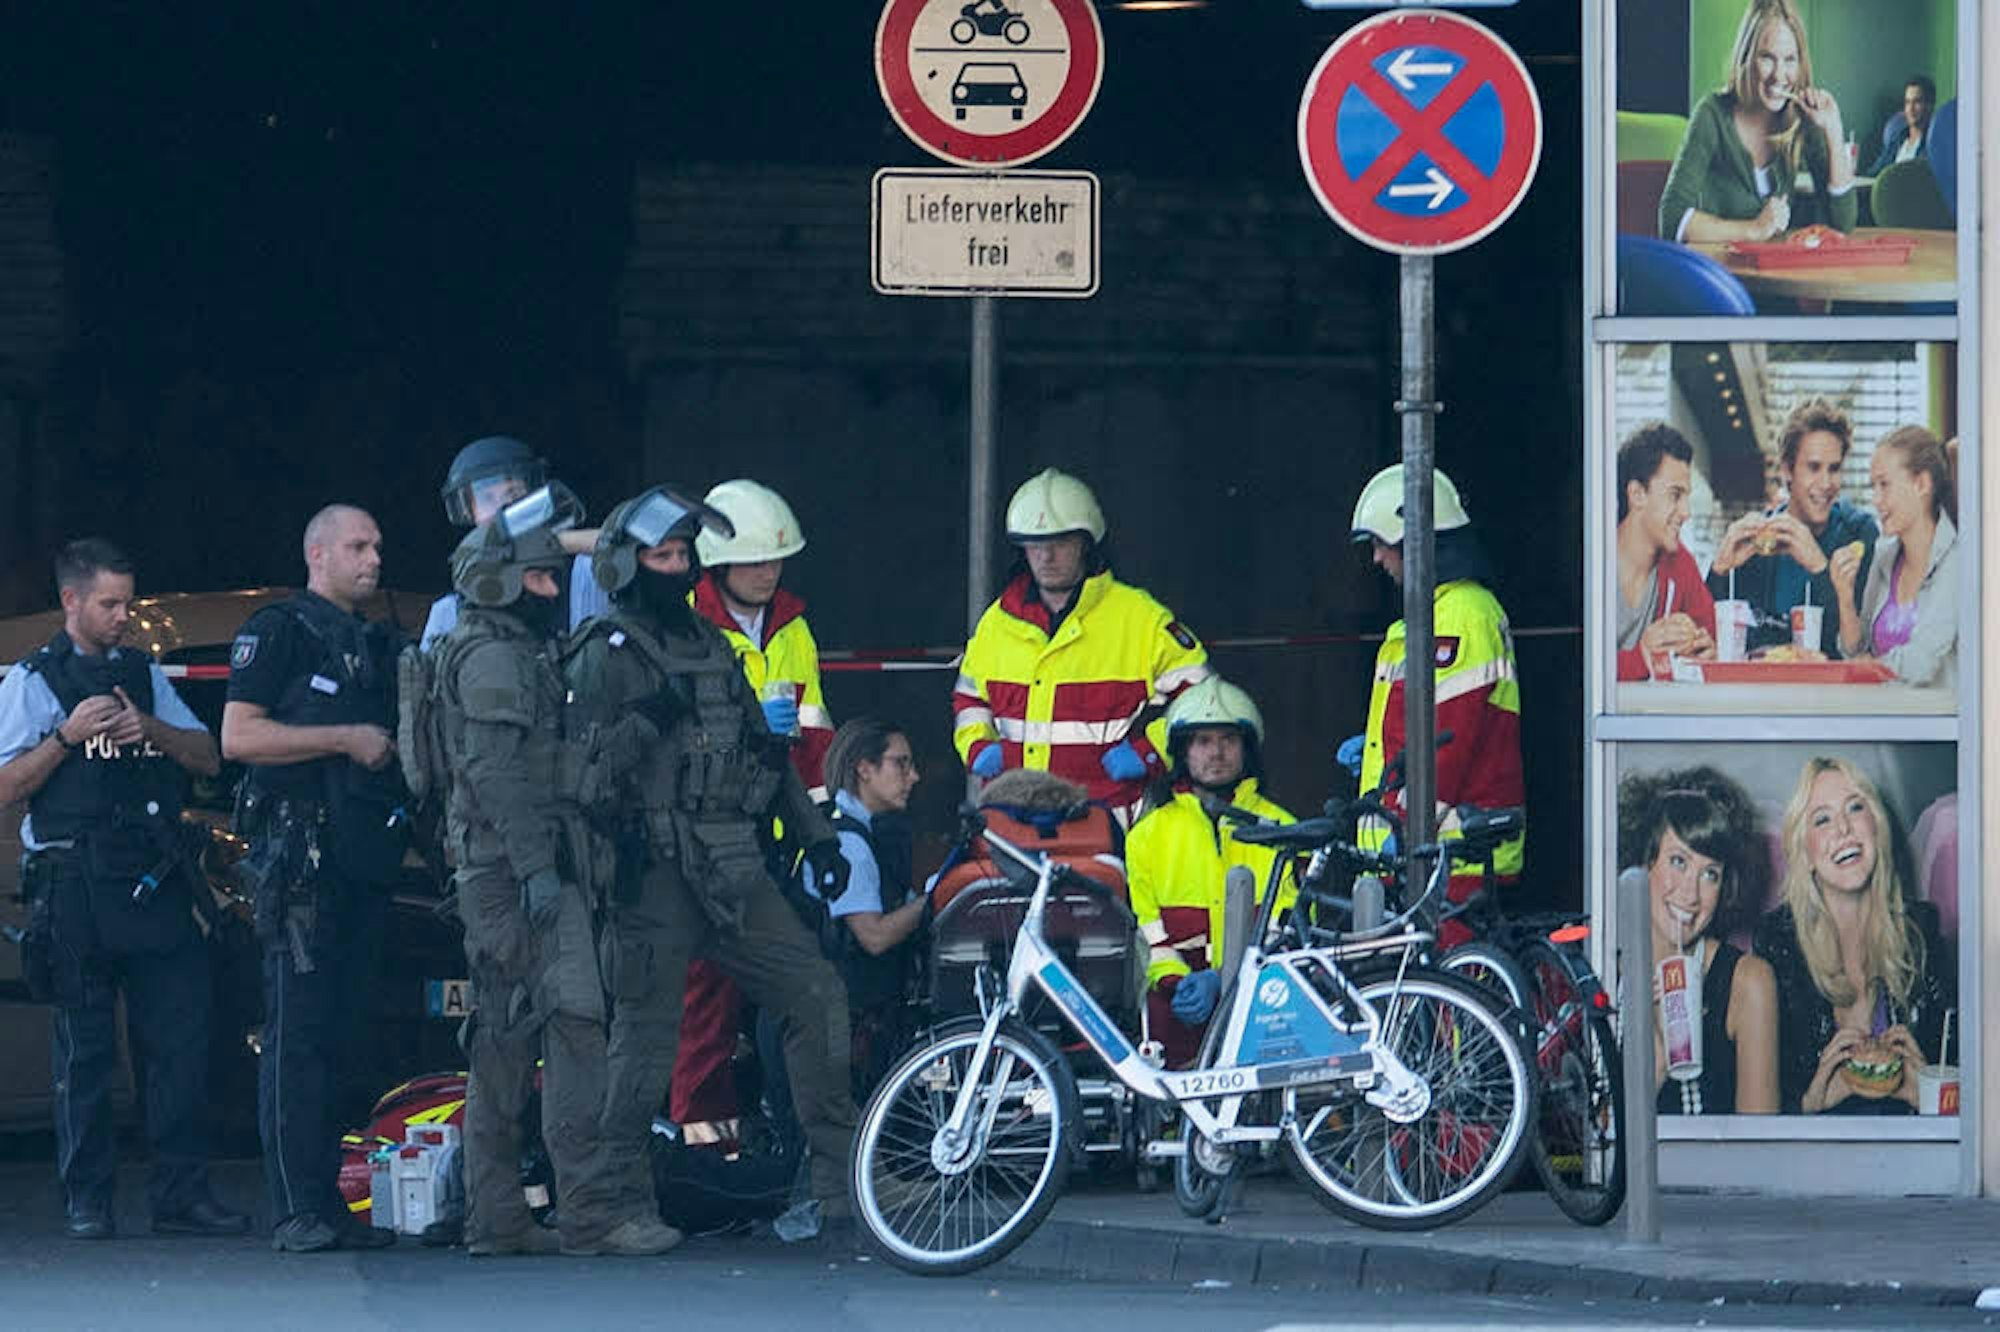 Sanitäter versorgen ein Opfer des Anschlages am Hauptbahnhof, das auf einer Trage liegt.